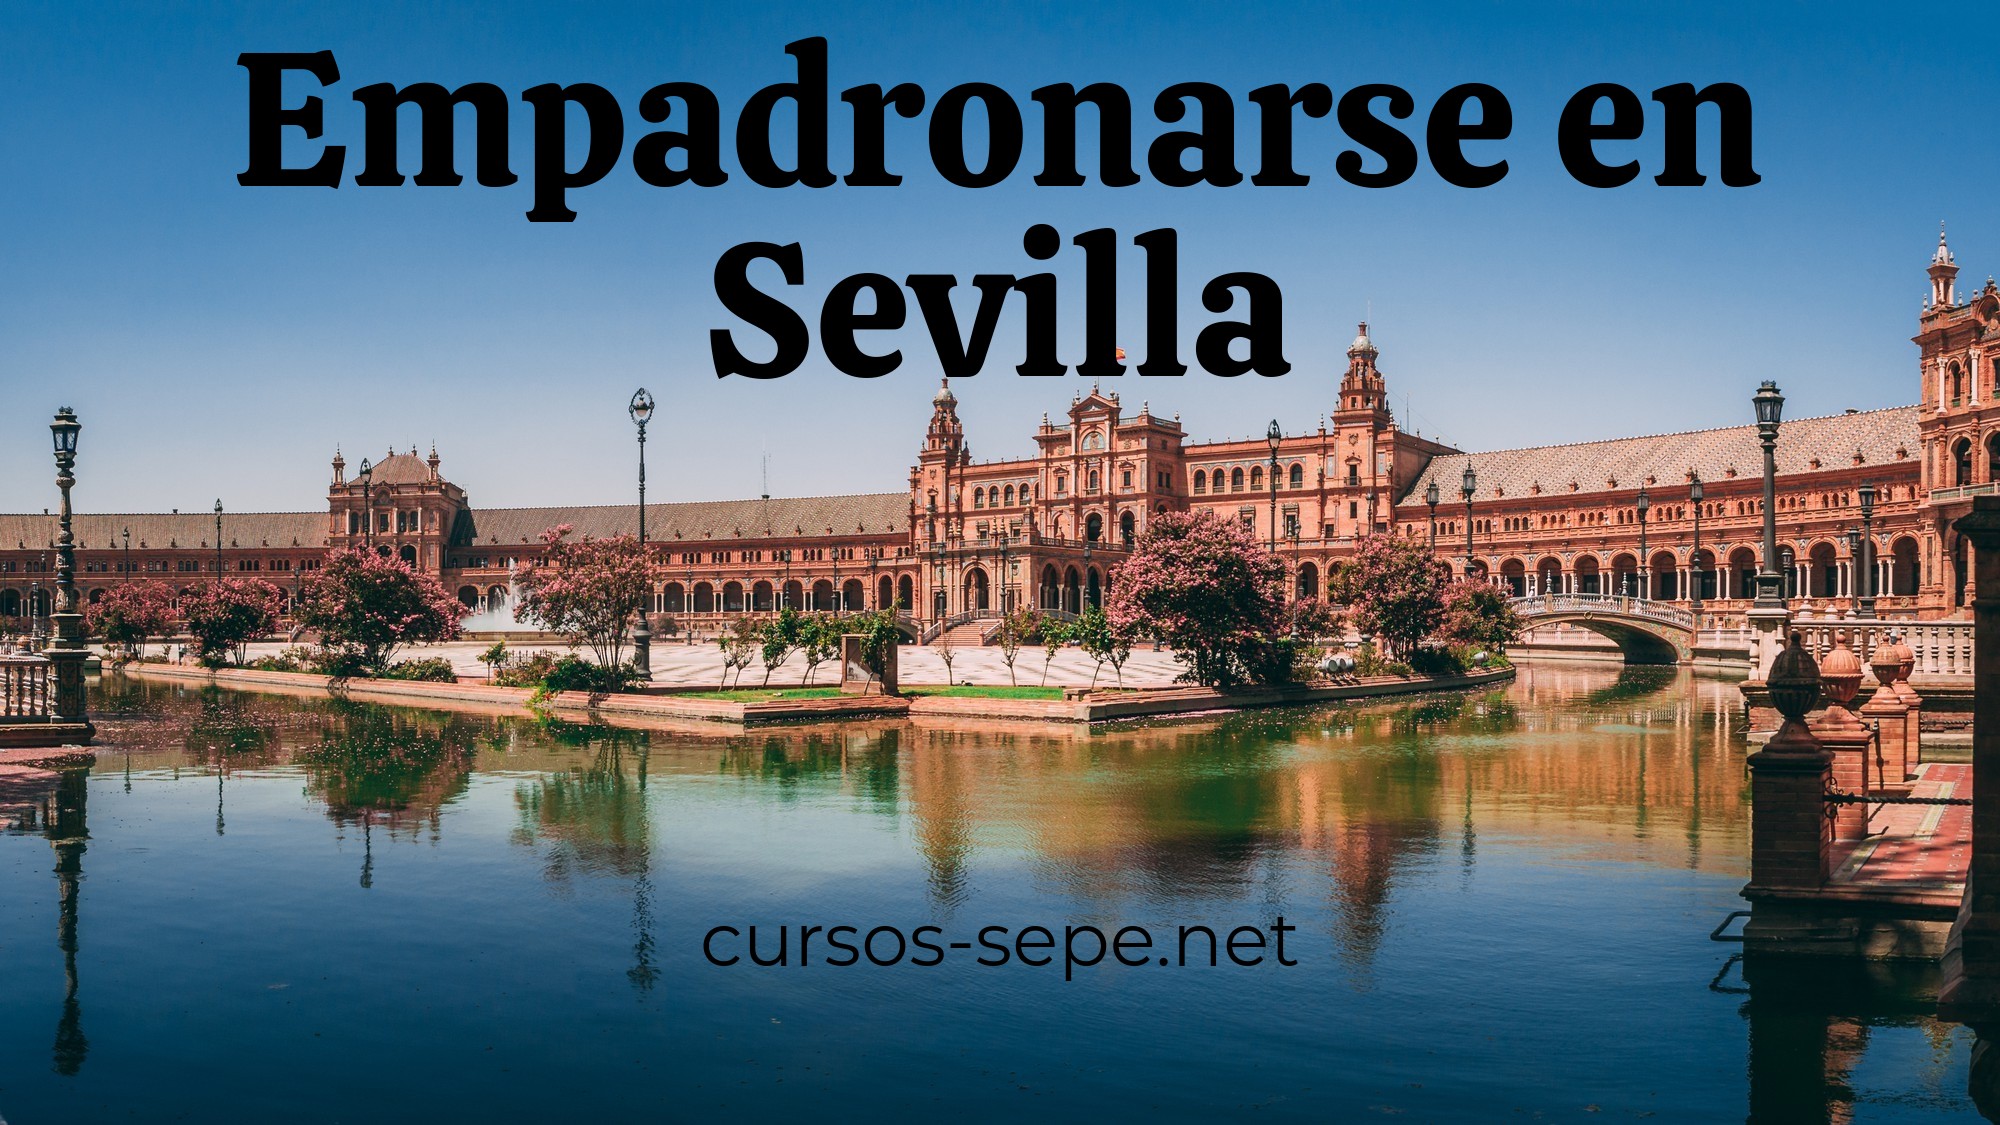 Guía completa y definitiva para empadronarse en la ciudad de Sevilla y pedanías cercanas.